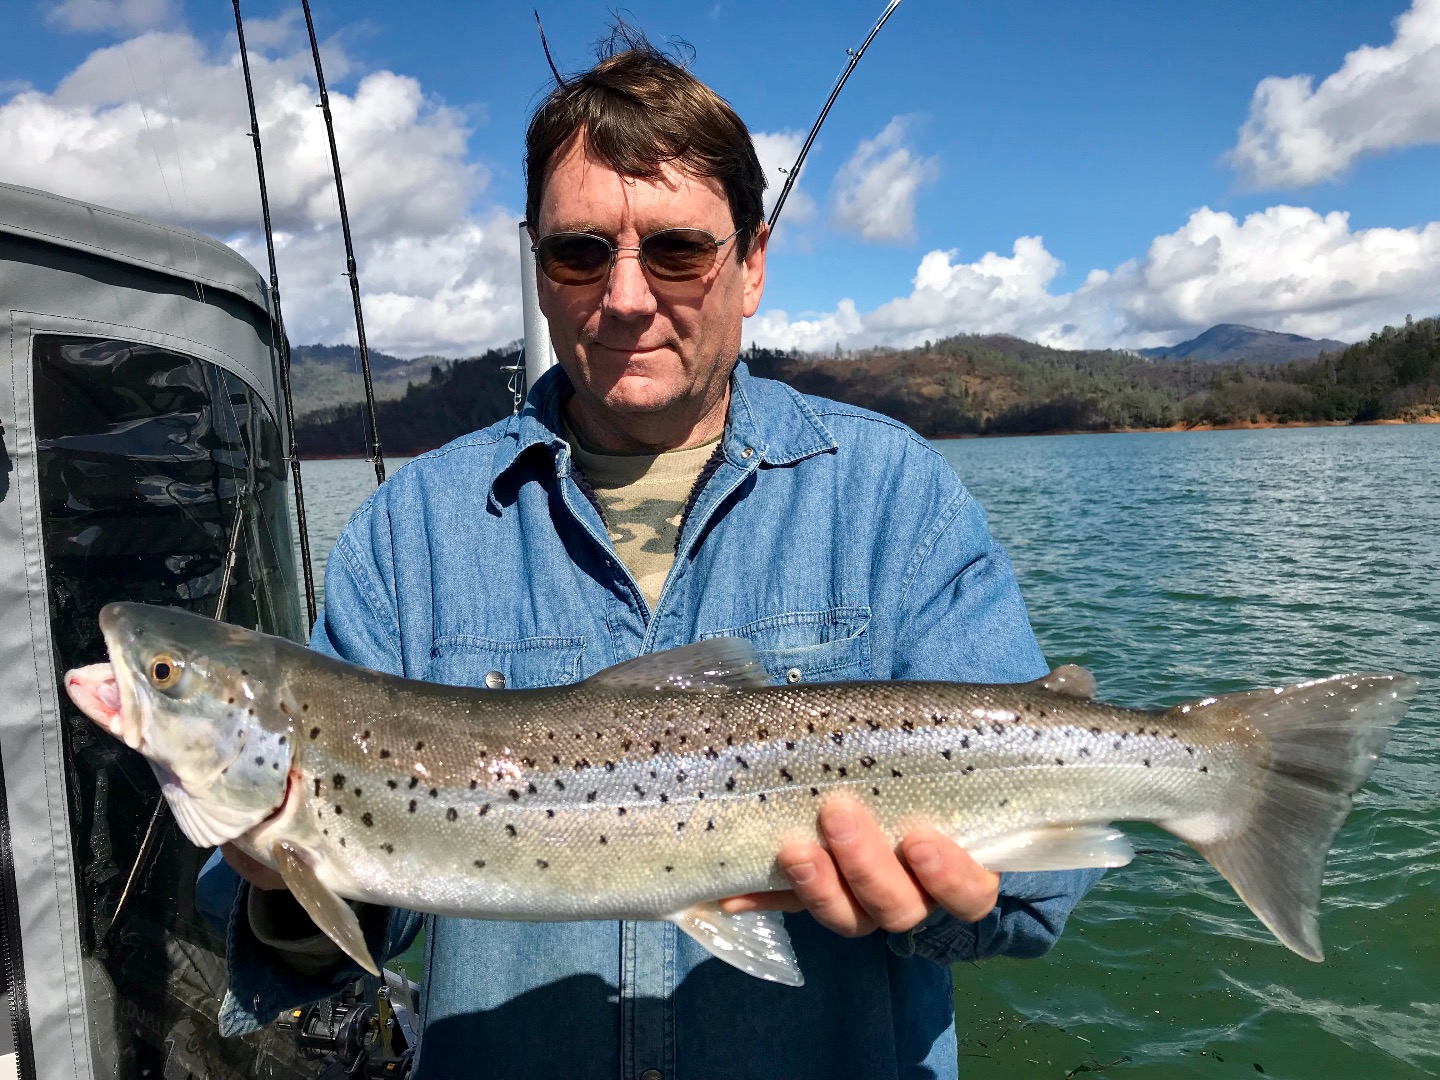 Sunshine and shiny trout on Shasta Lake!